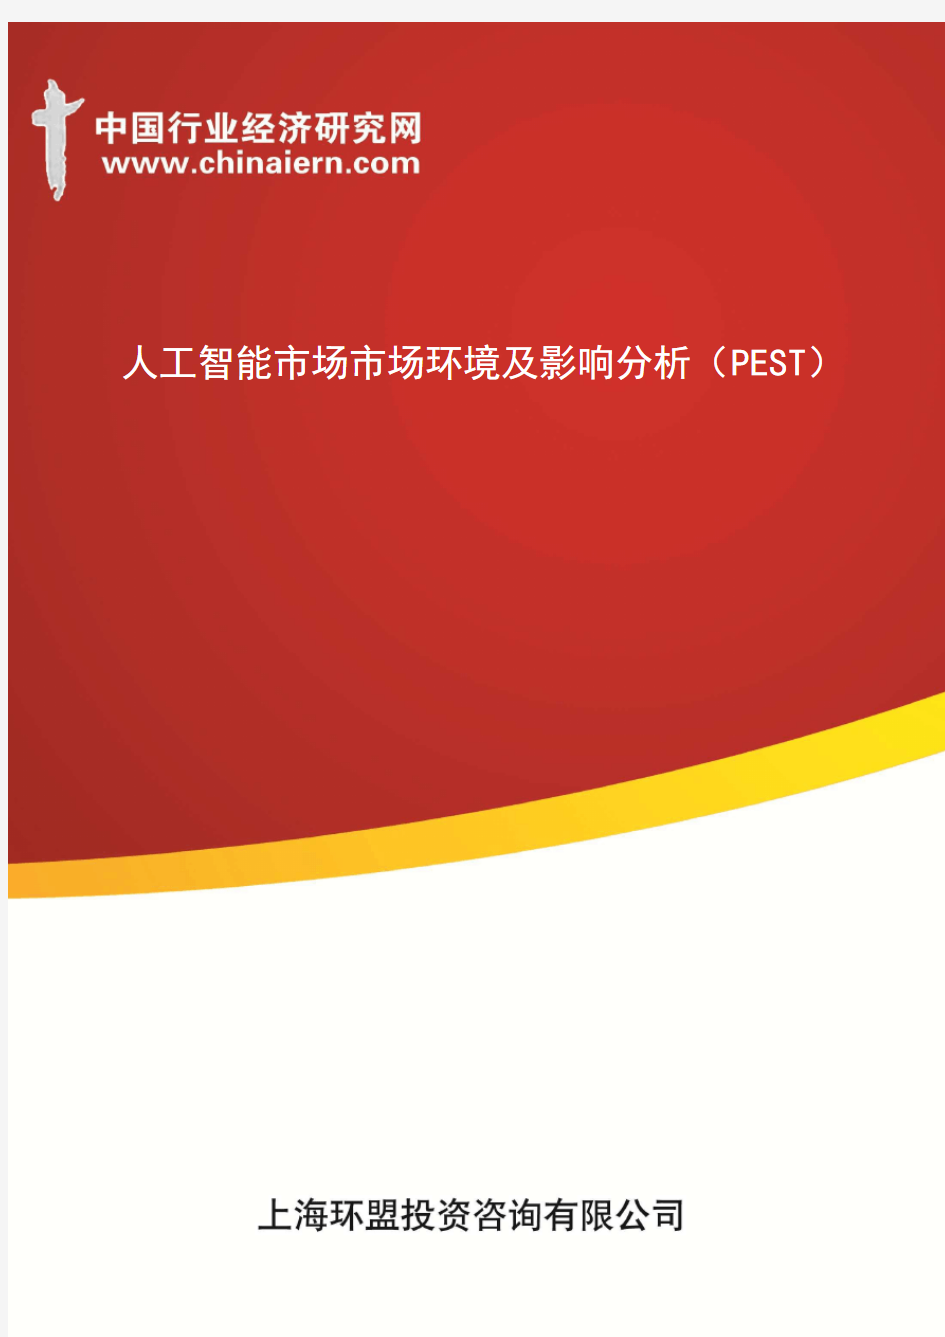 人工智能市场市场环境及影响分析(PEST)(上海环盟)